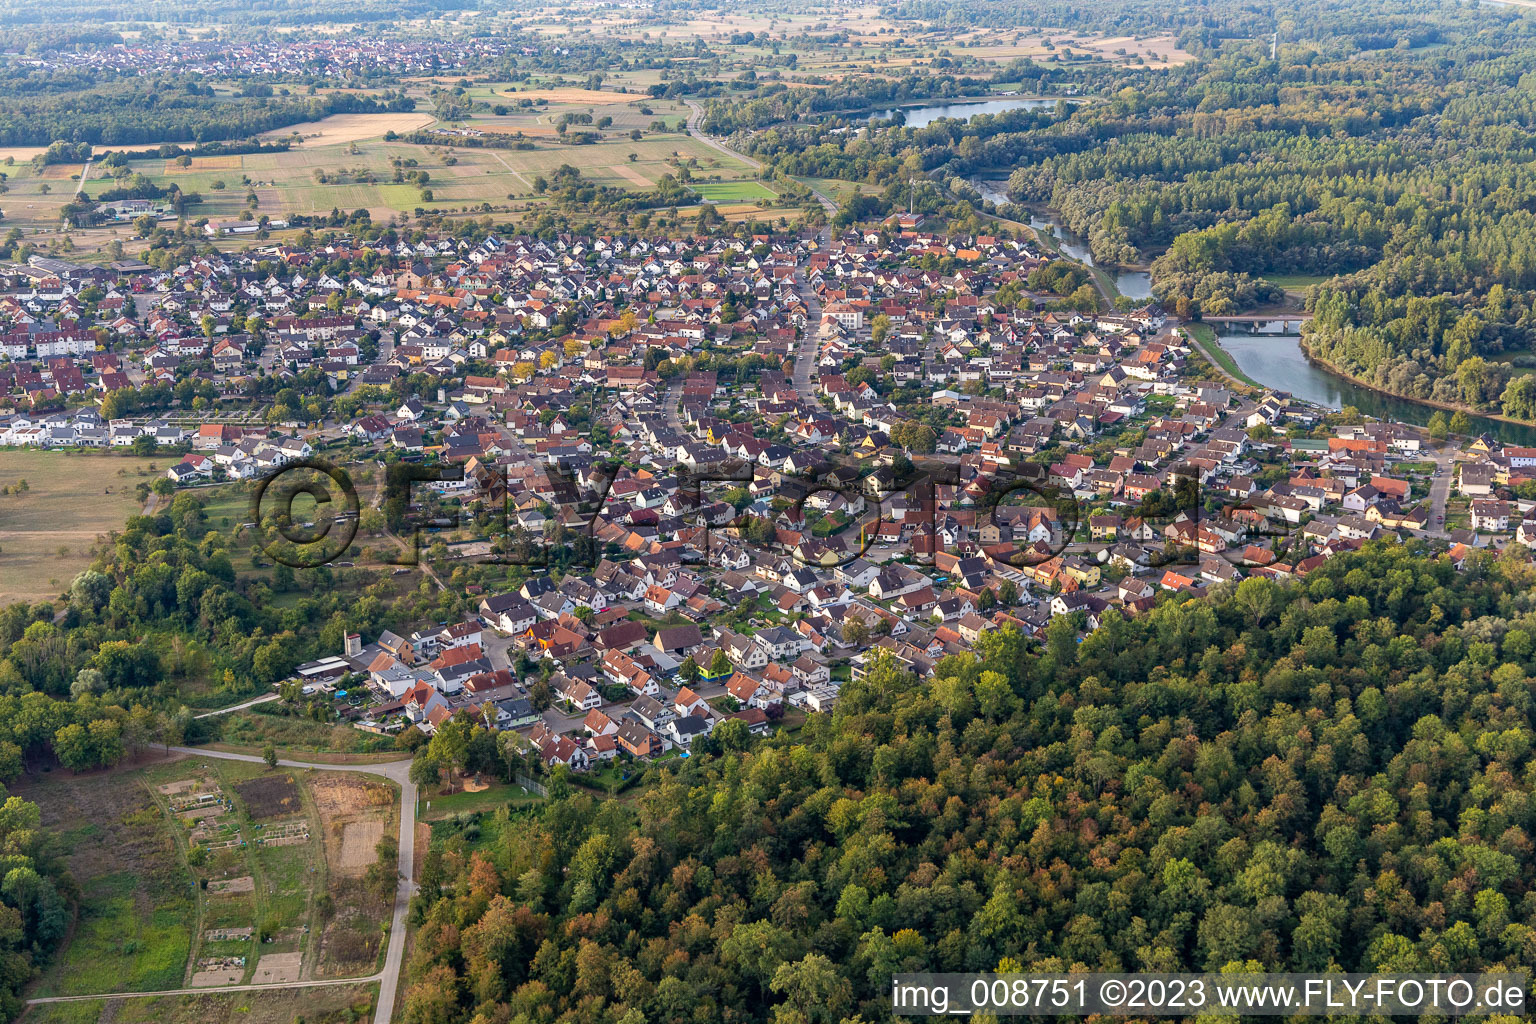 Luftbild von Ortskern am Uferbereich des Altrhein - Flußverlaufes in Plittersdorf in Rastatt im Bundesland Baden-Württemberg, Deutschland